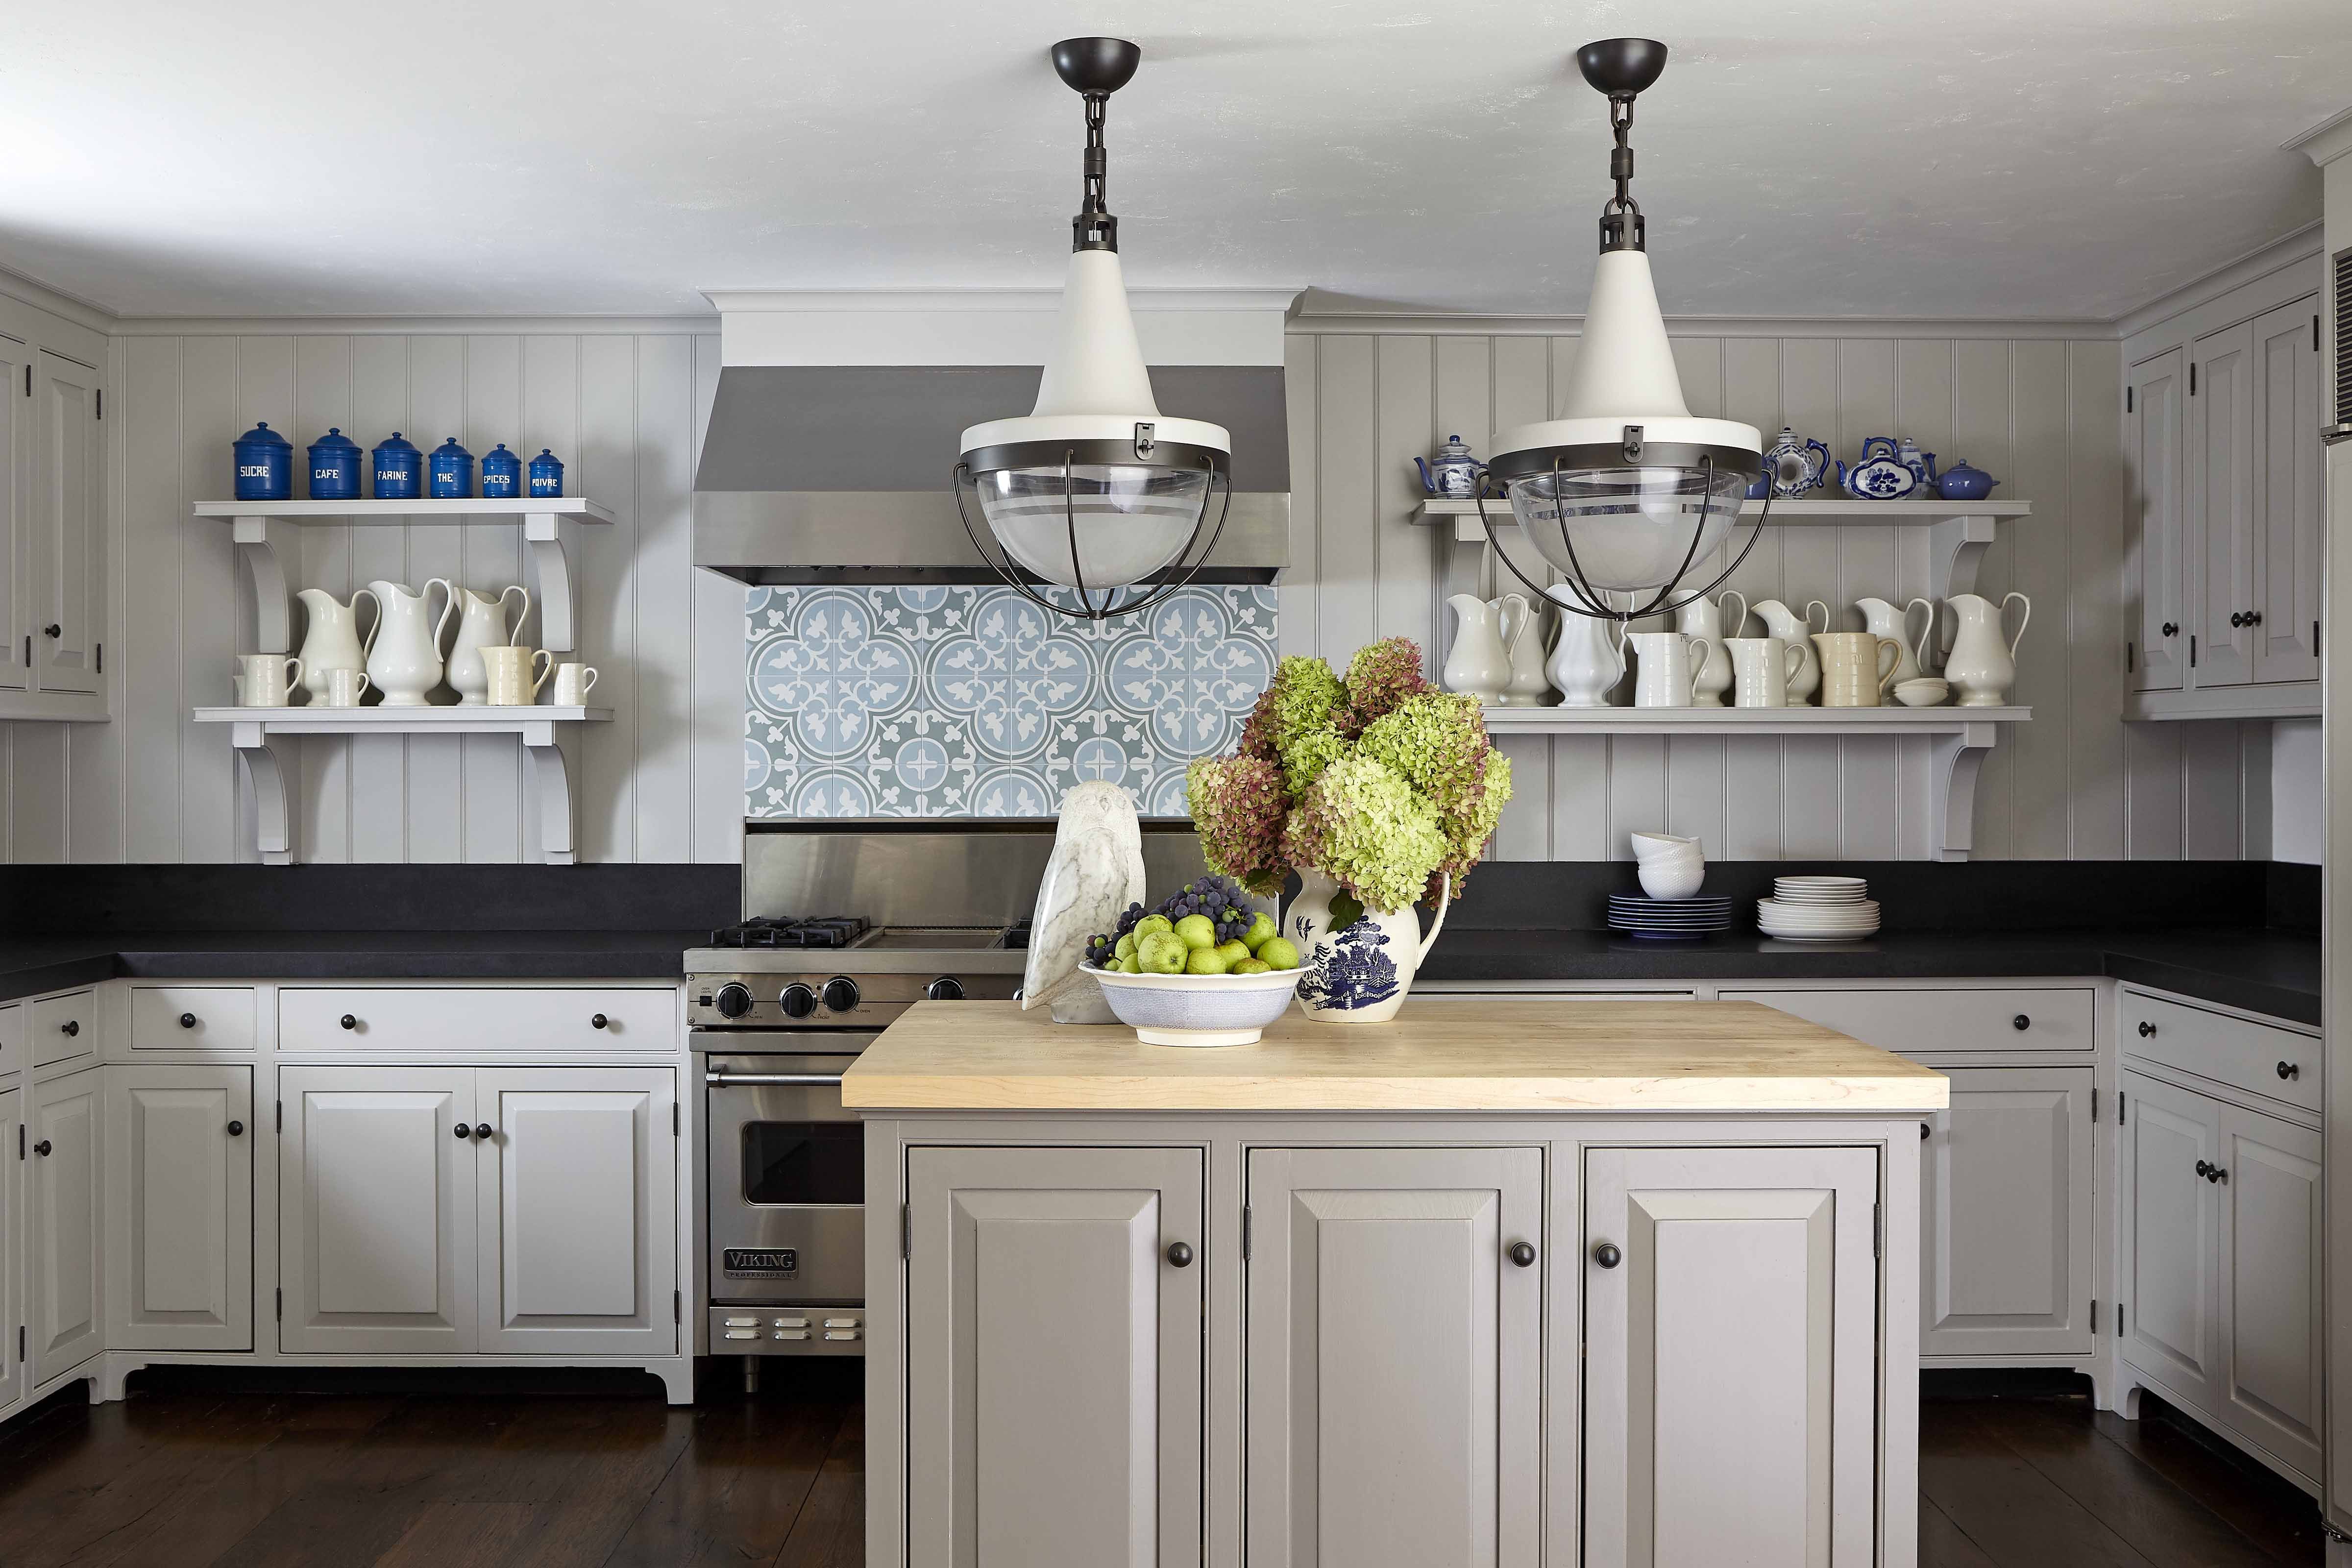 20 Best Kitchen Backsplash Ideas 20   Tile Designs for Kitchens